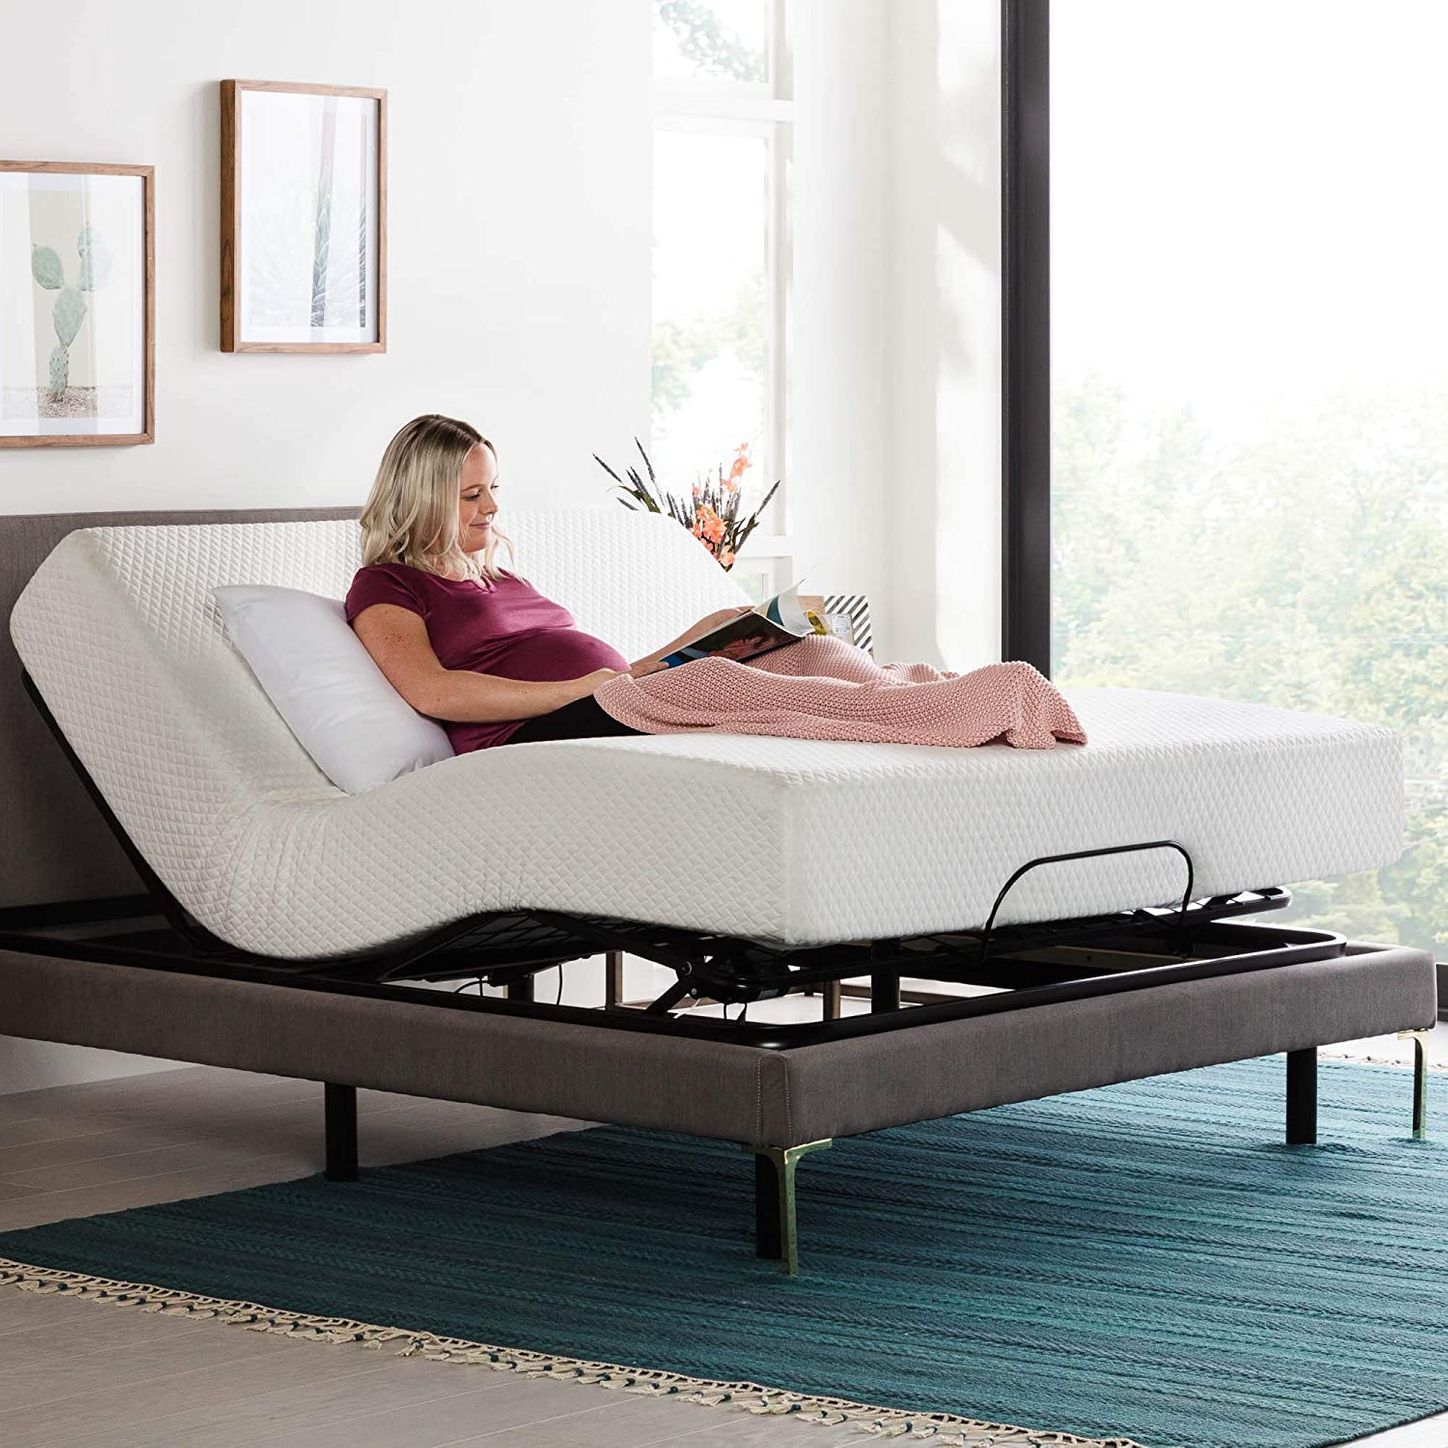 10 Best Adjustable Bed Bases 2022 The, Best Adjustable Bed Frame For Tempurpedic Mattress